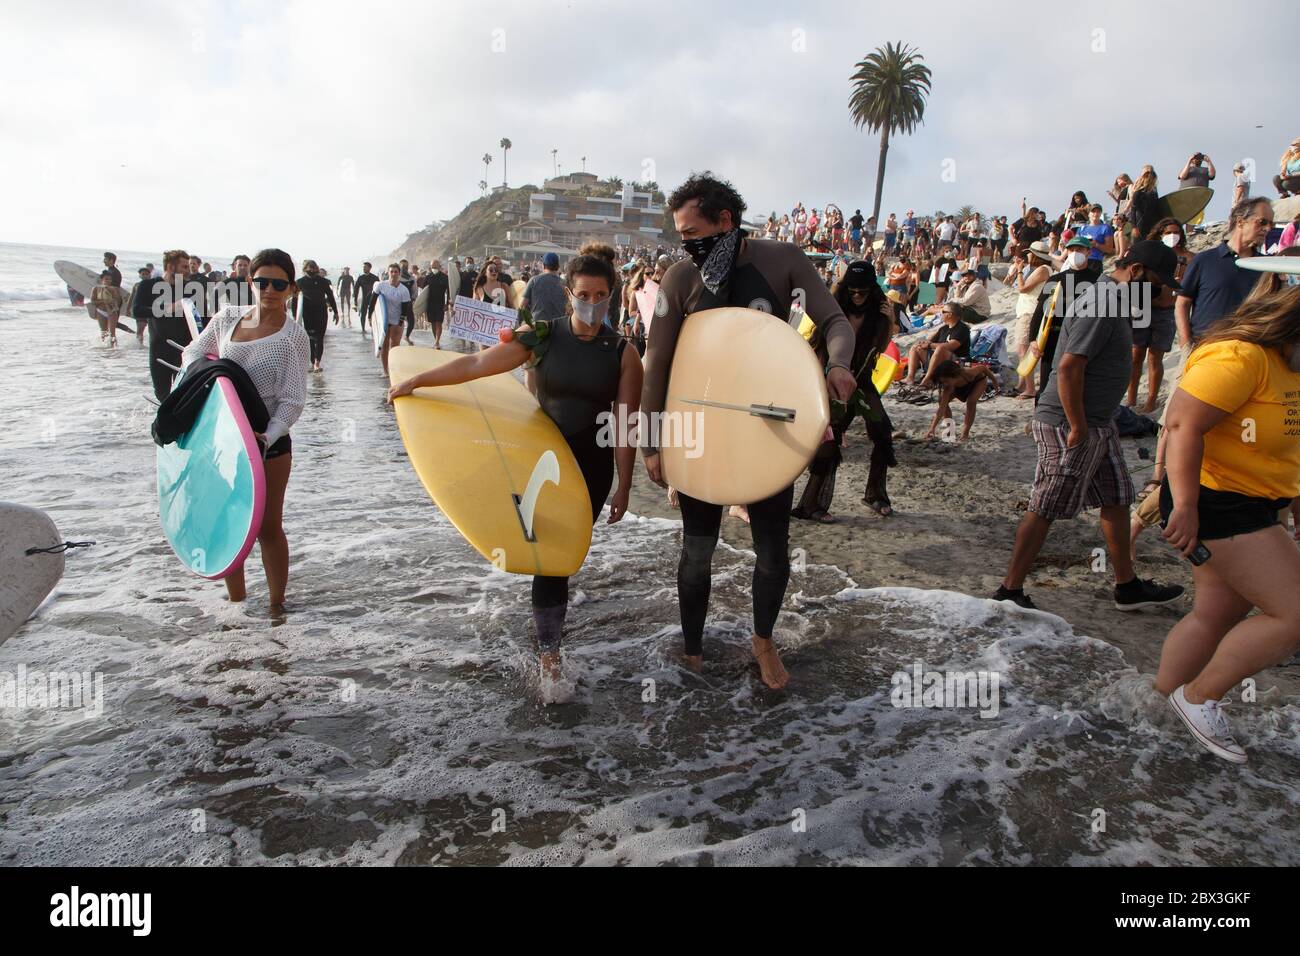 Une manifestation Black Lives Matter à Moonlight Beach à Encinitas, Californie. La manifestation a été précipitée par le meurtre de l'américain George Floyd. Banque D'Images